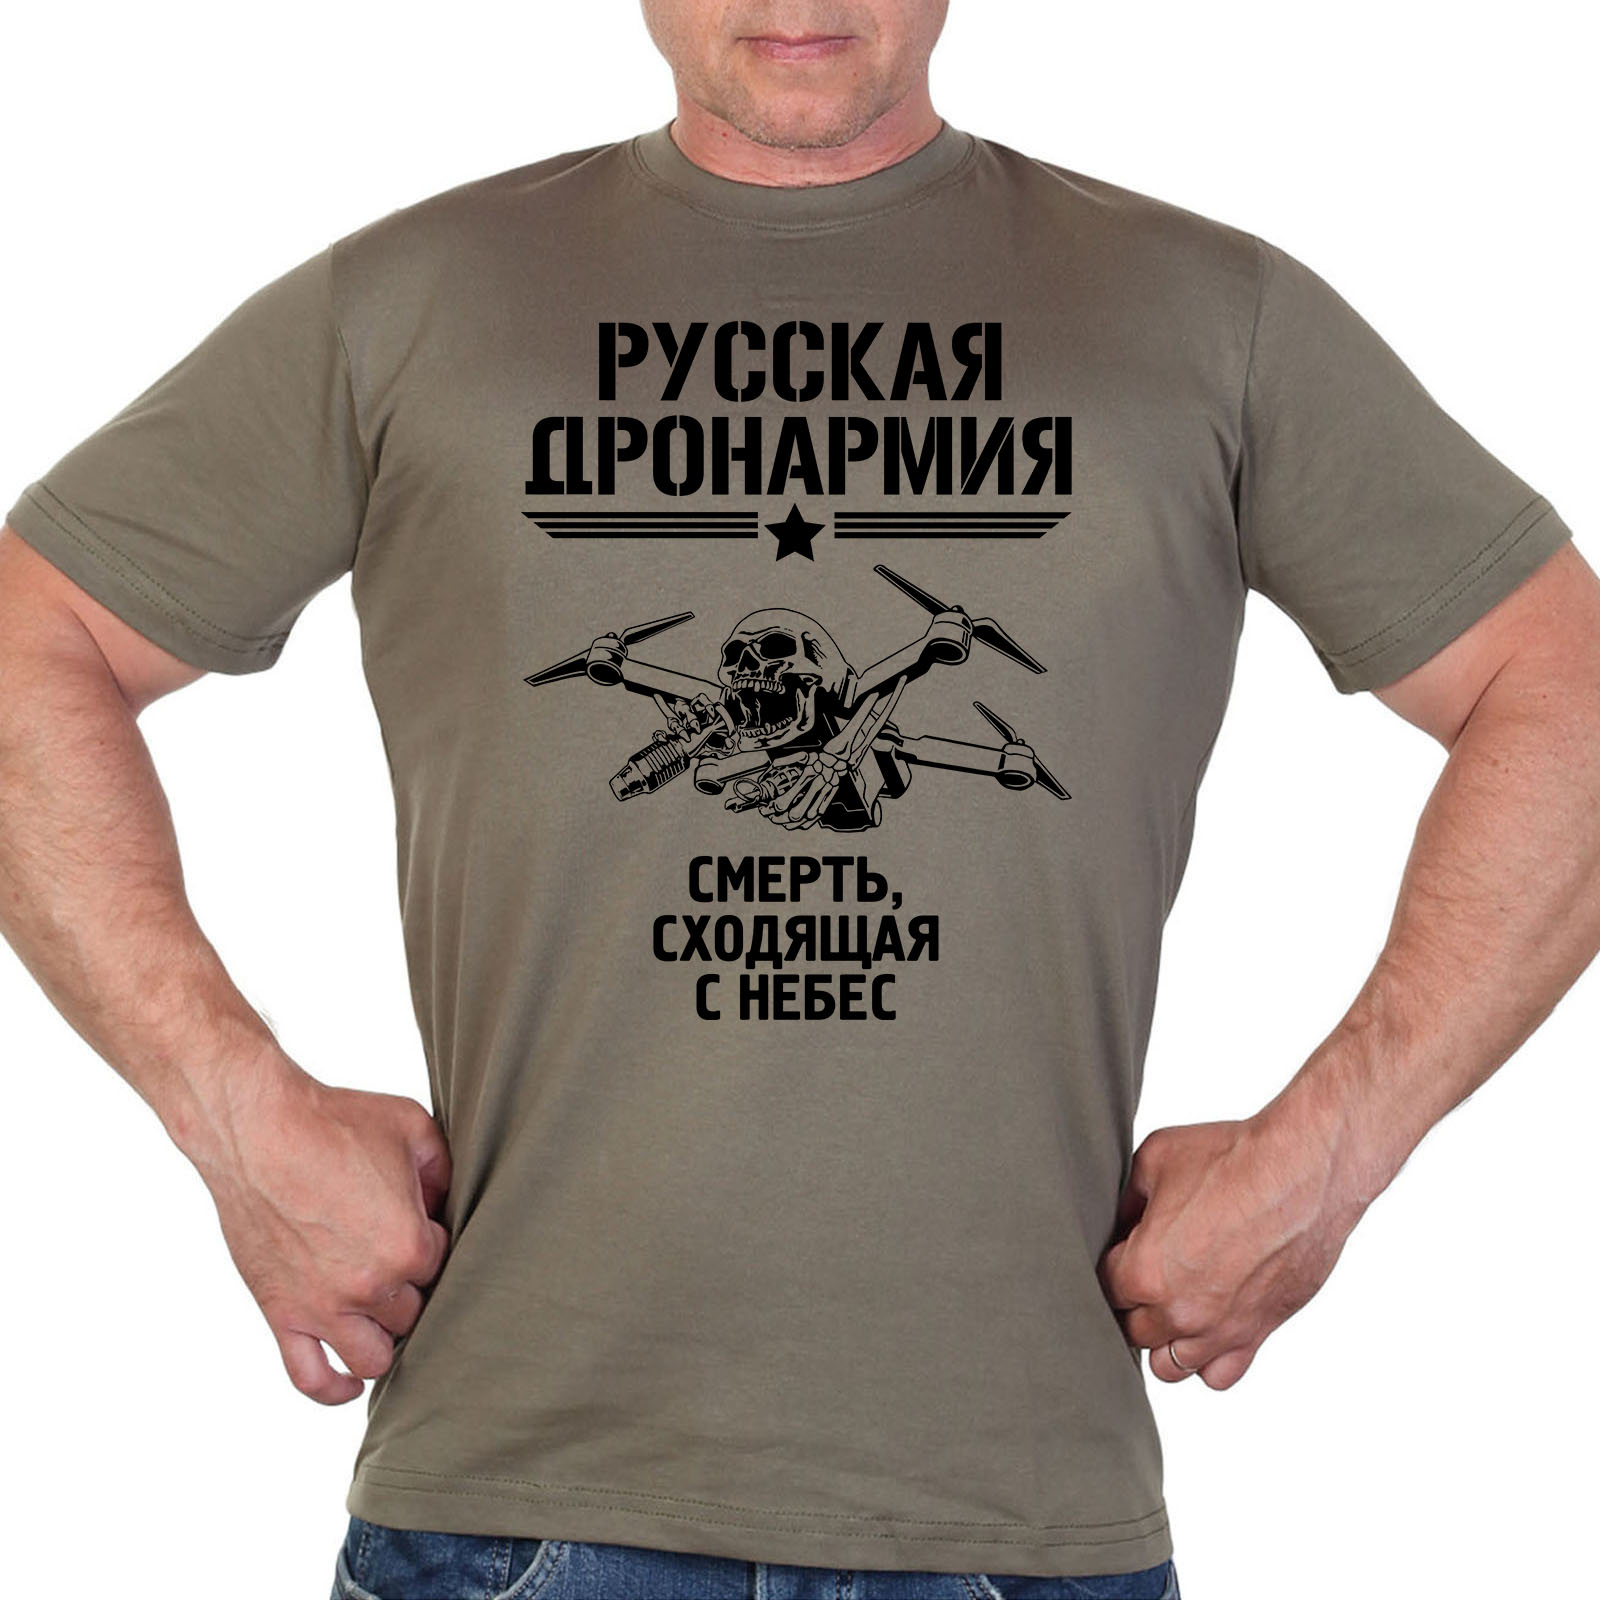 Купить футболку "Русская ДронАрмия"